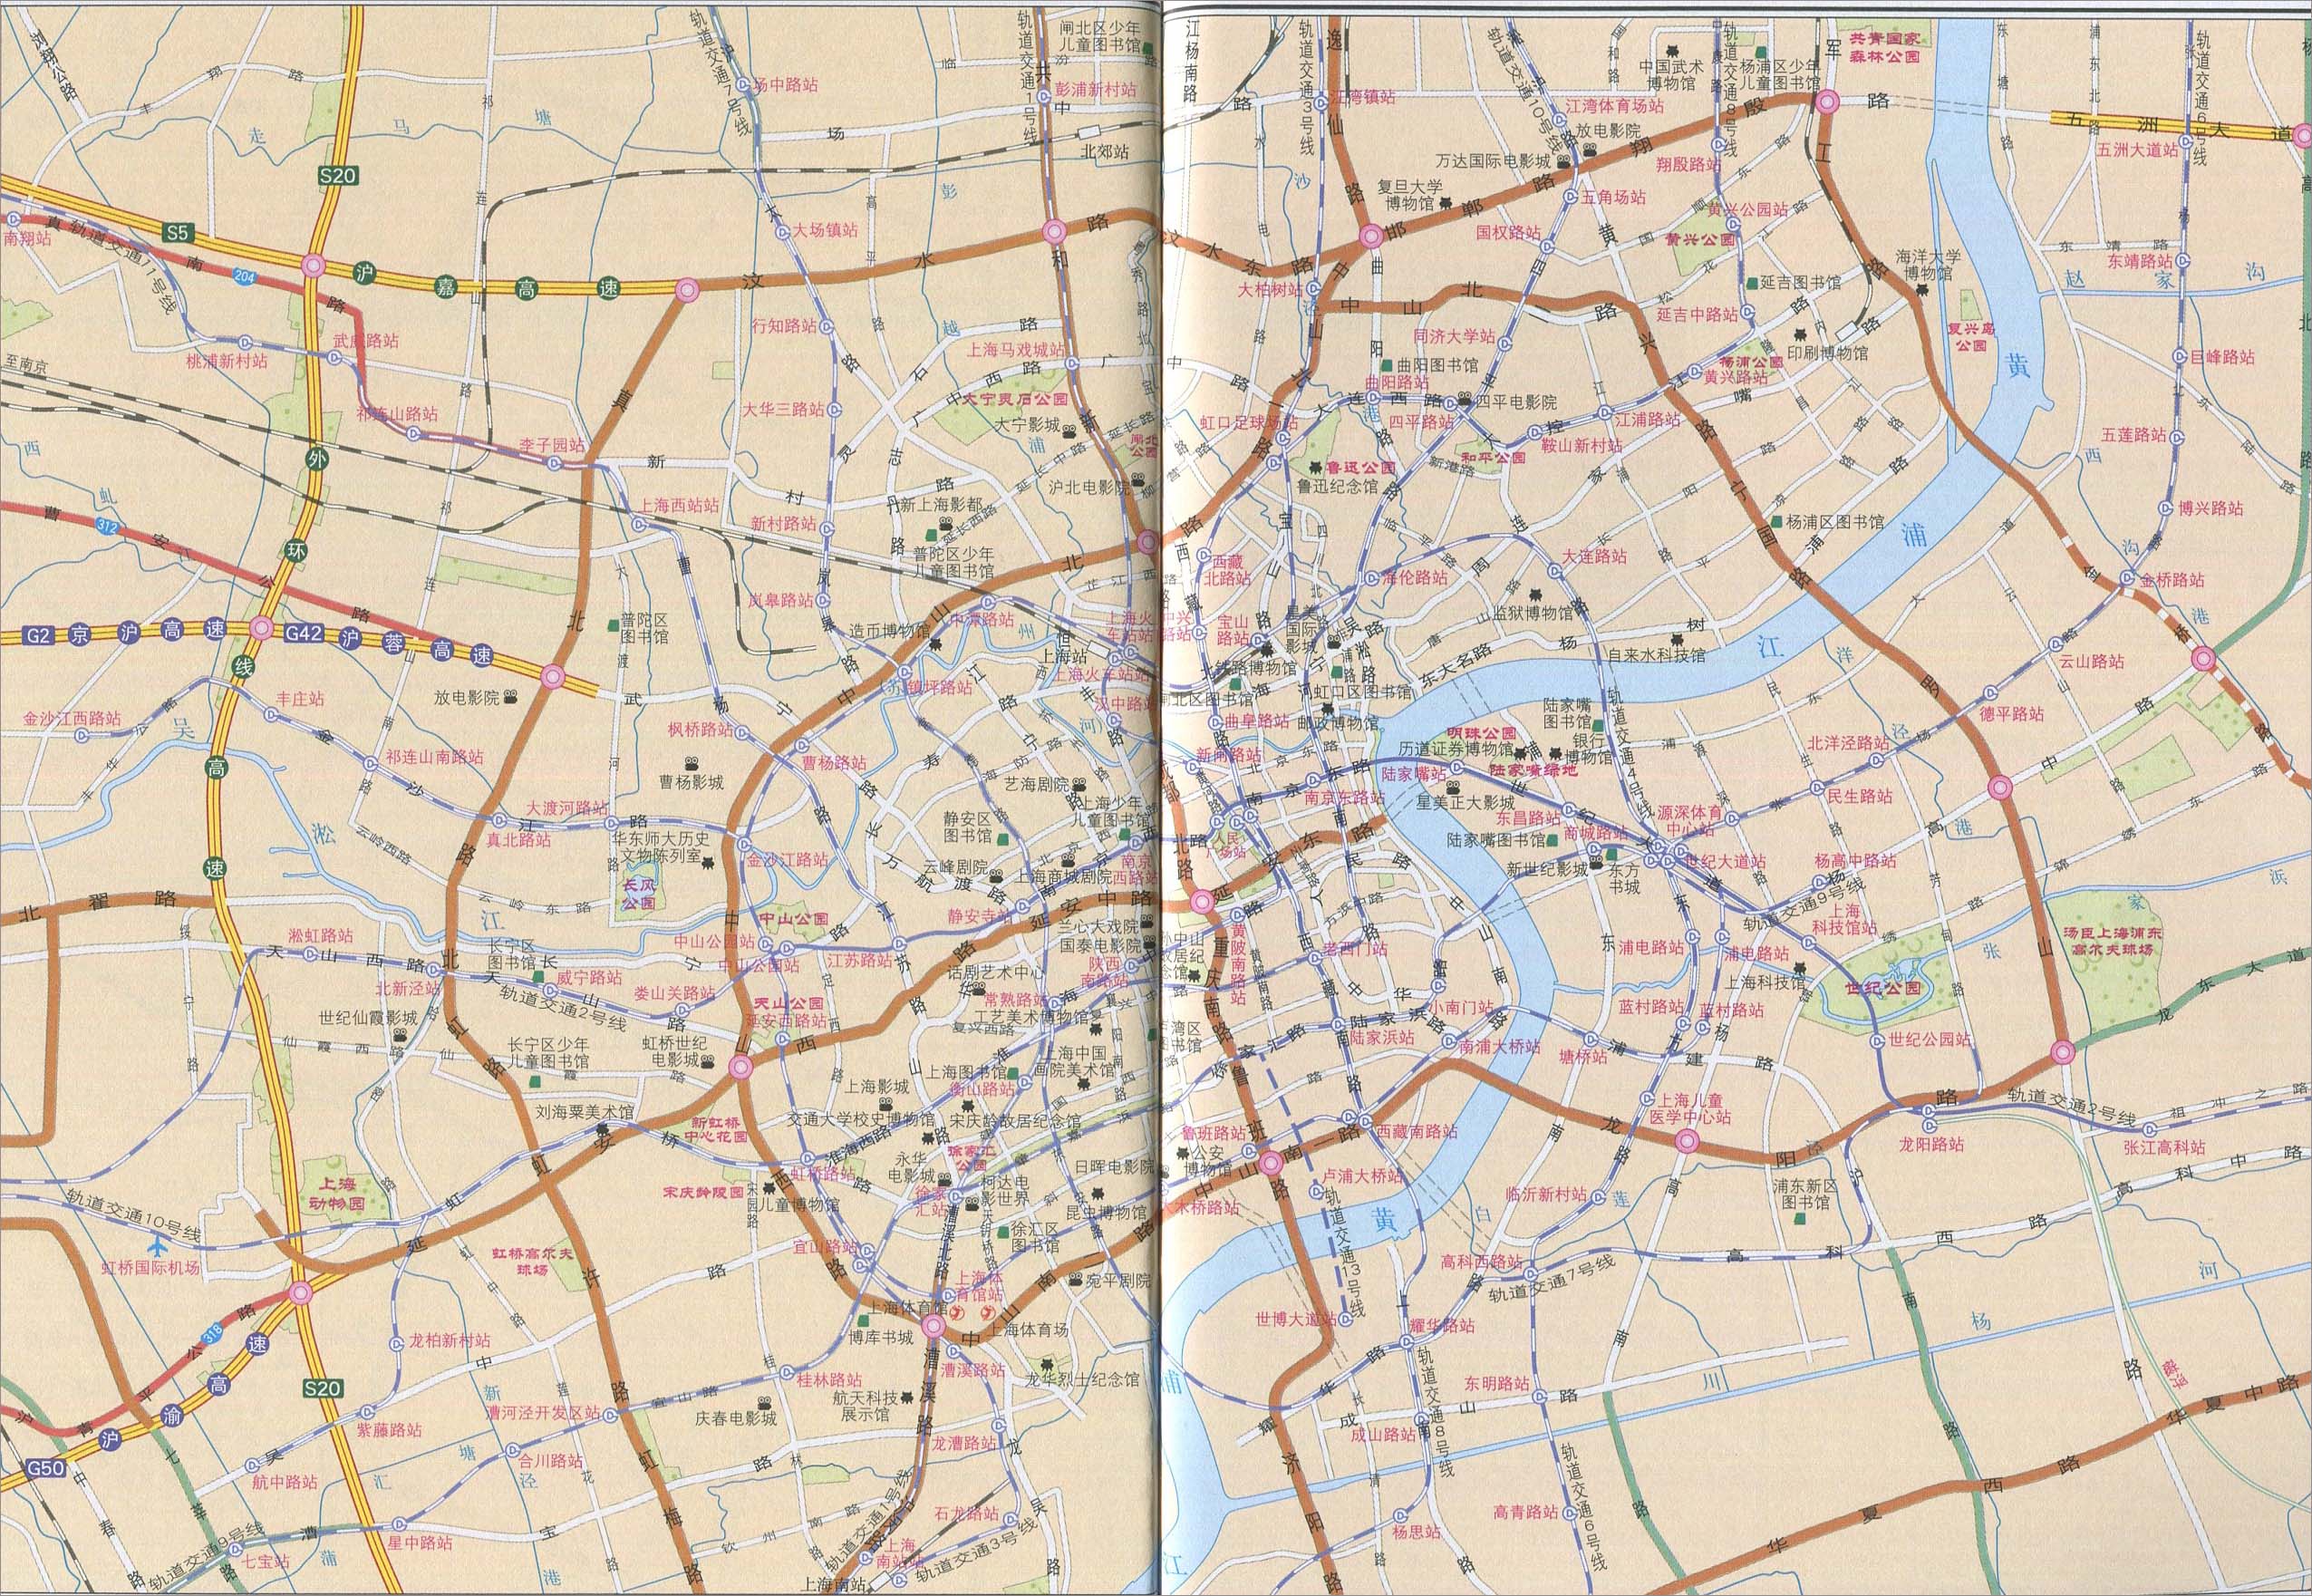 上海市区主要购物分布图 | 上海 | 下一幅地图: 上海市政区地图图片